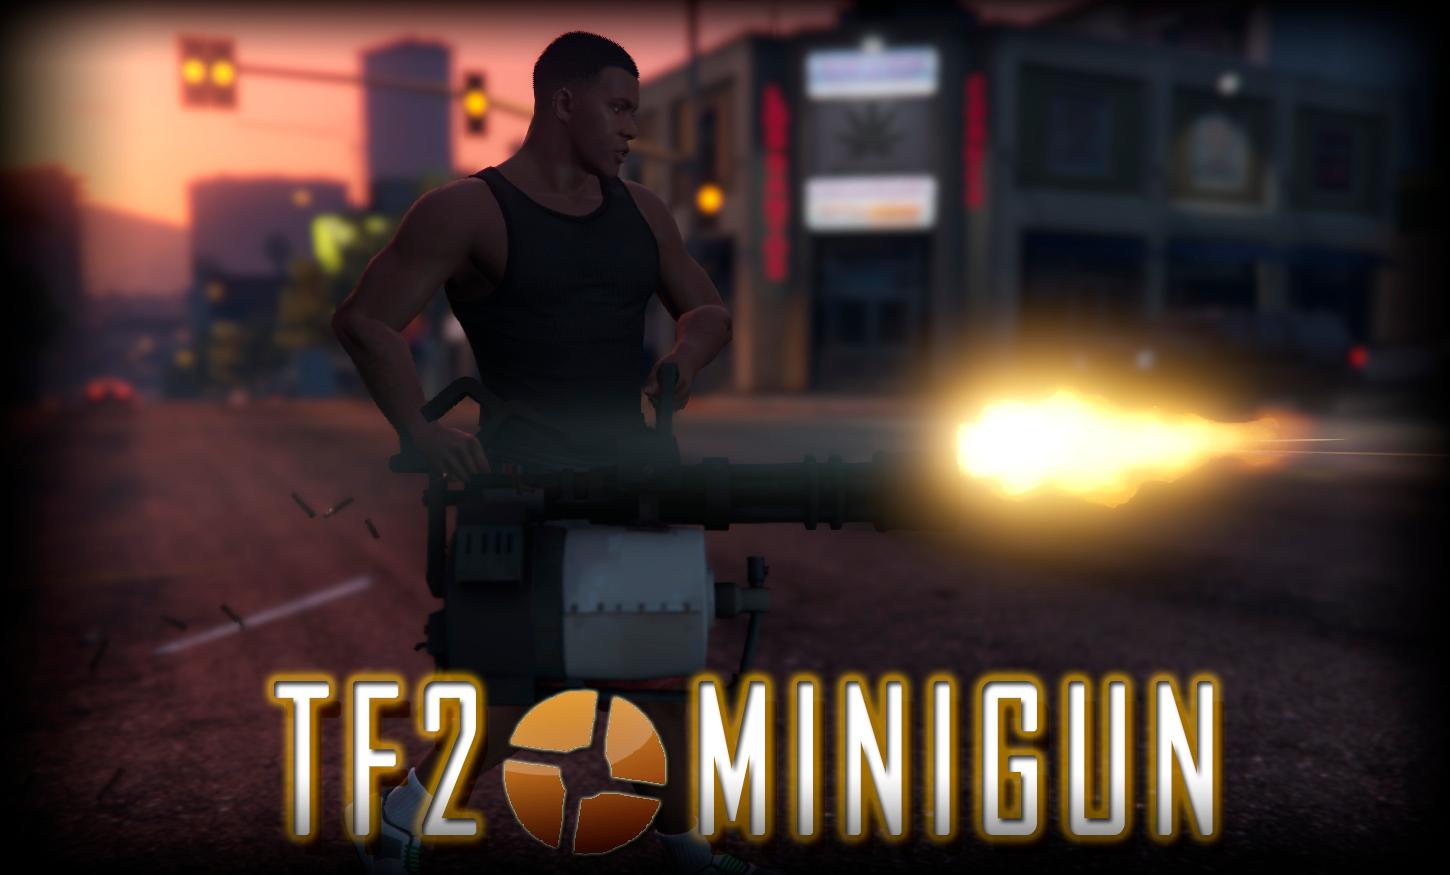 minigun tf2